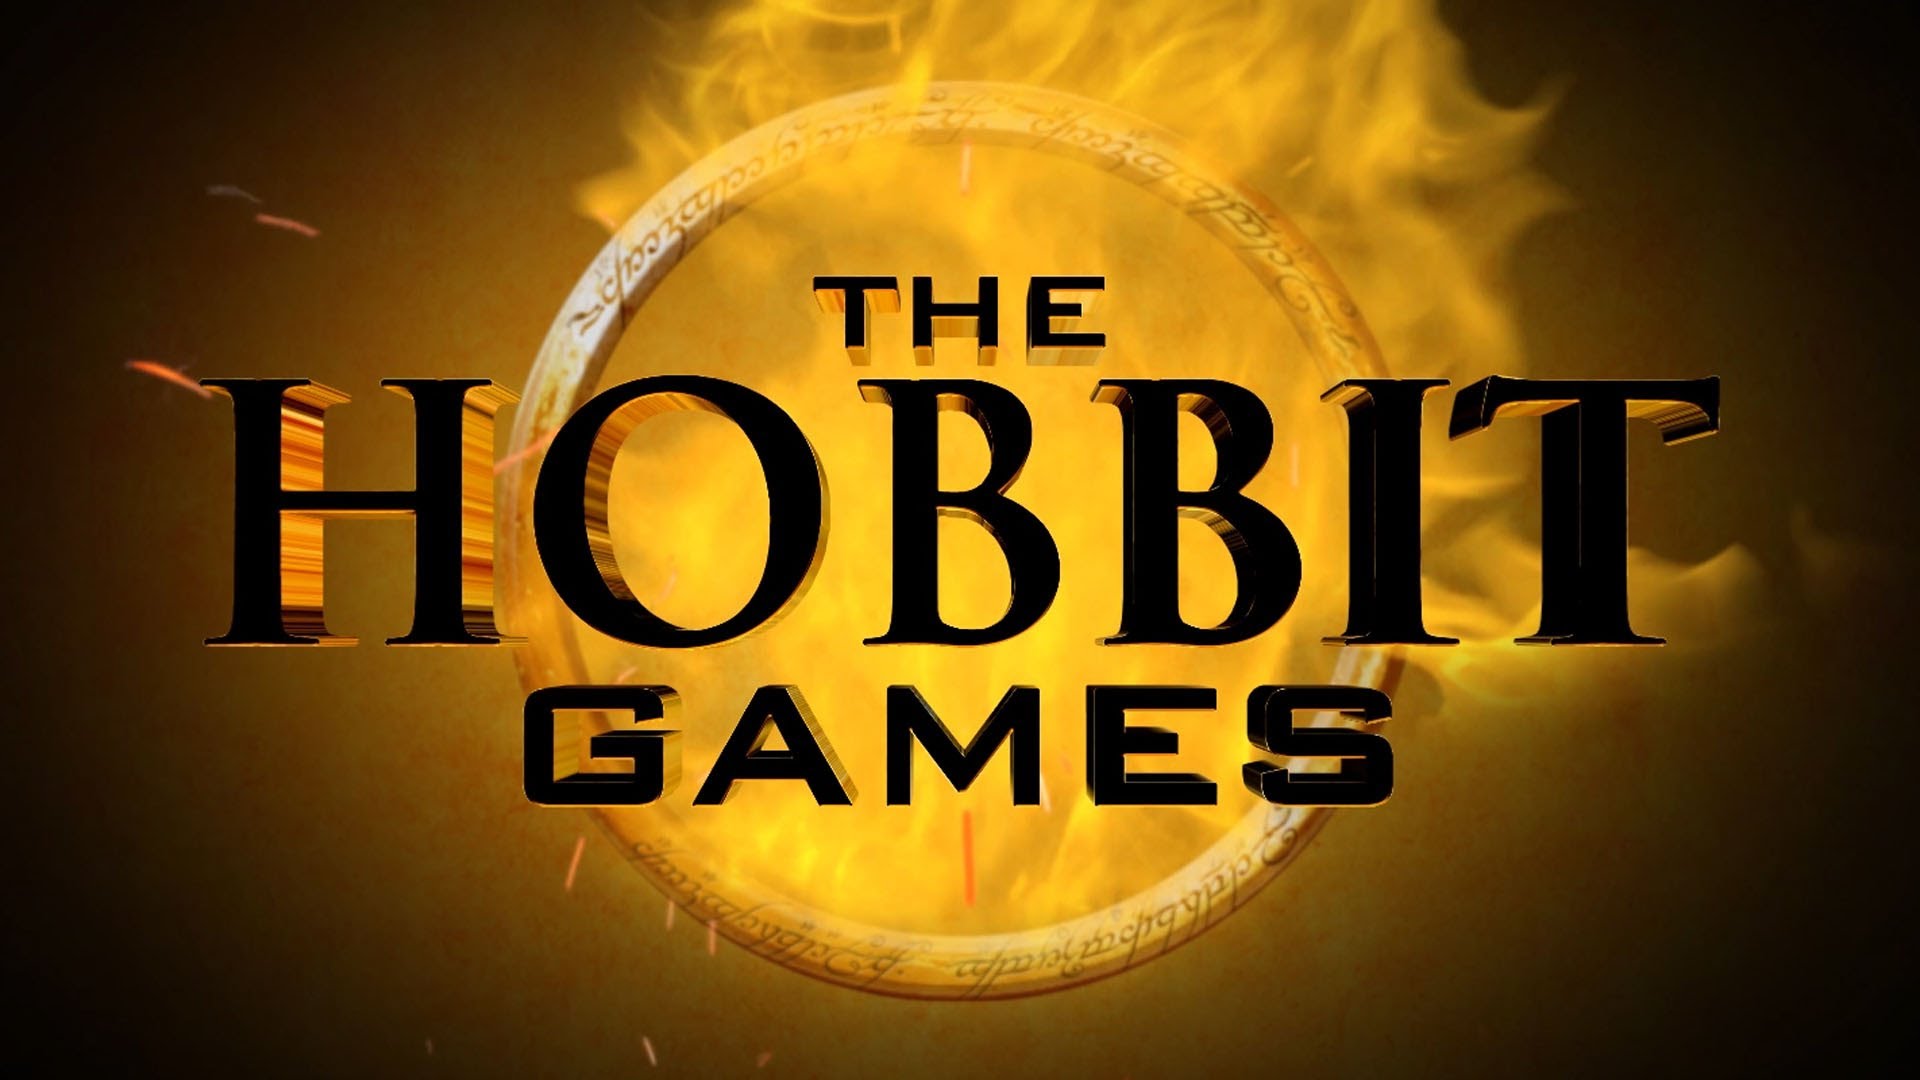 The Hobbit Games